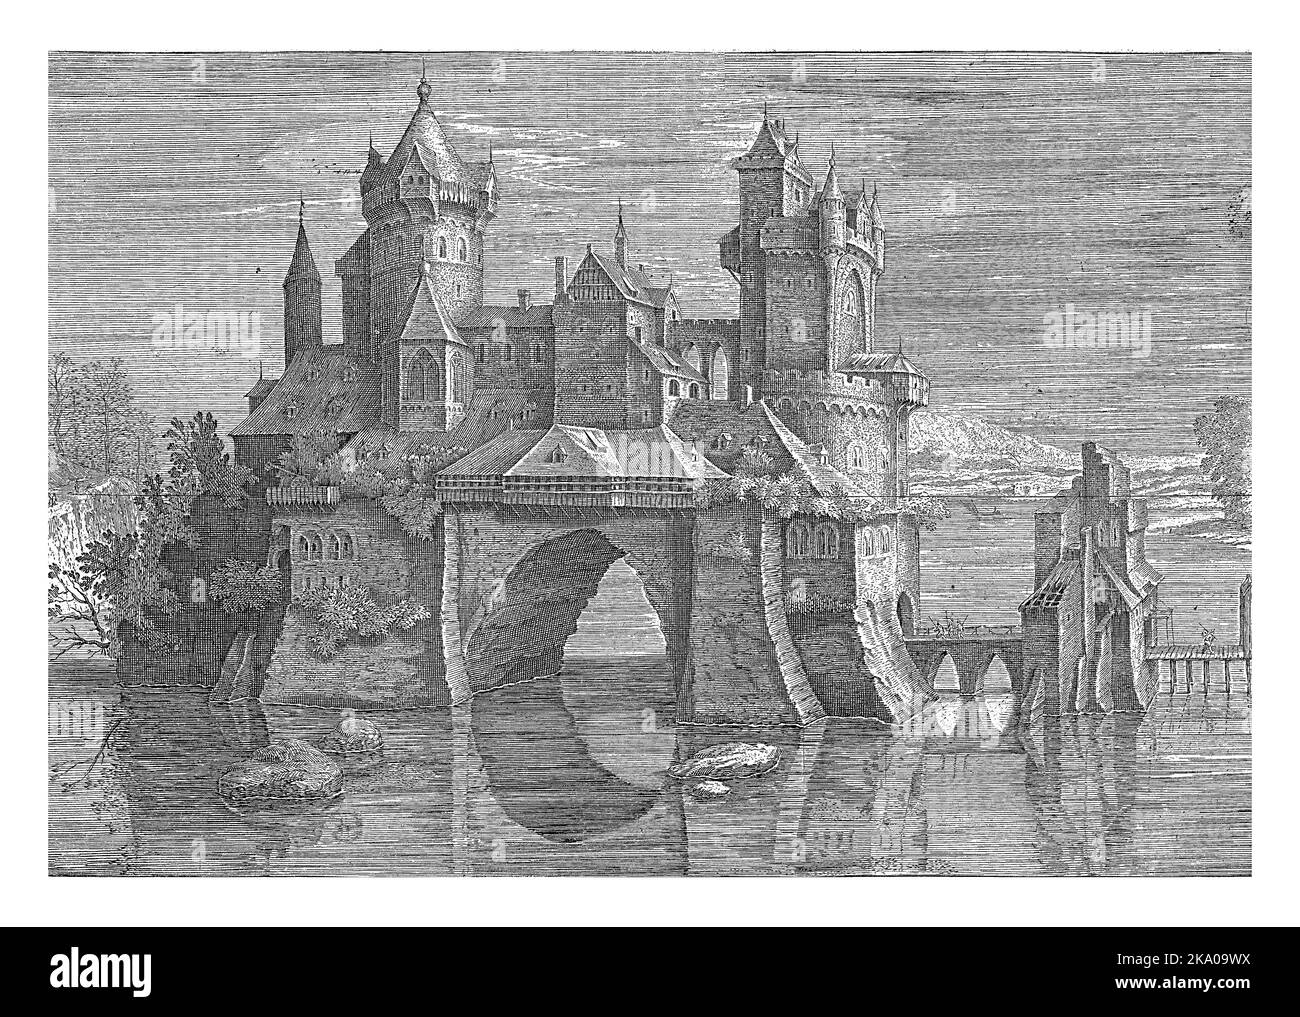 Vue sur le village biblique d'Emmaus, représenté comme un château entouré d'eau. Le château et donc l'île est relié à la (invisible) ra Banque D'Images